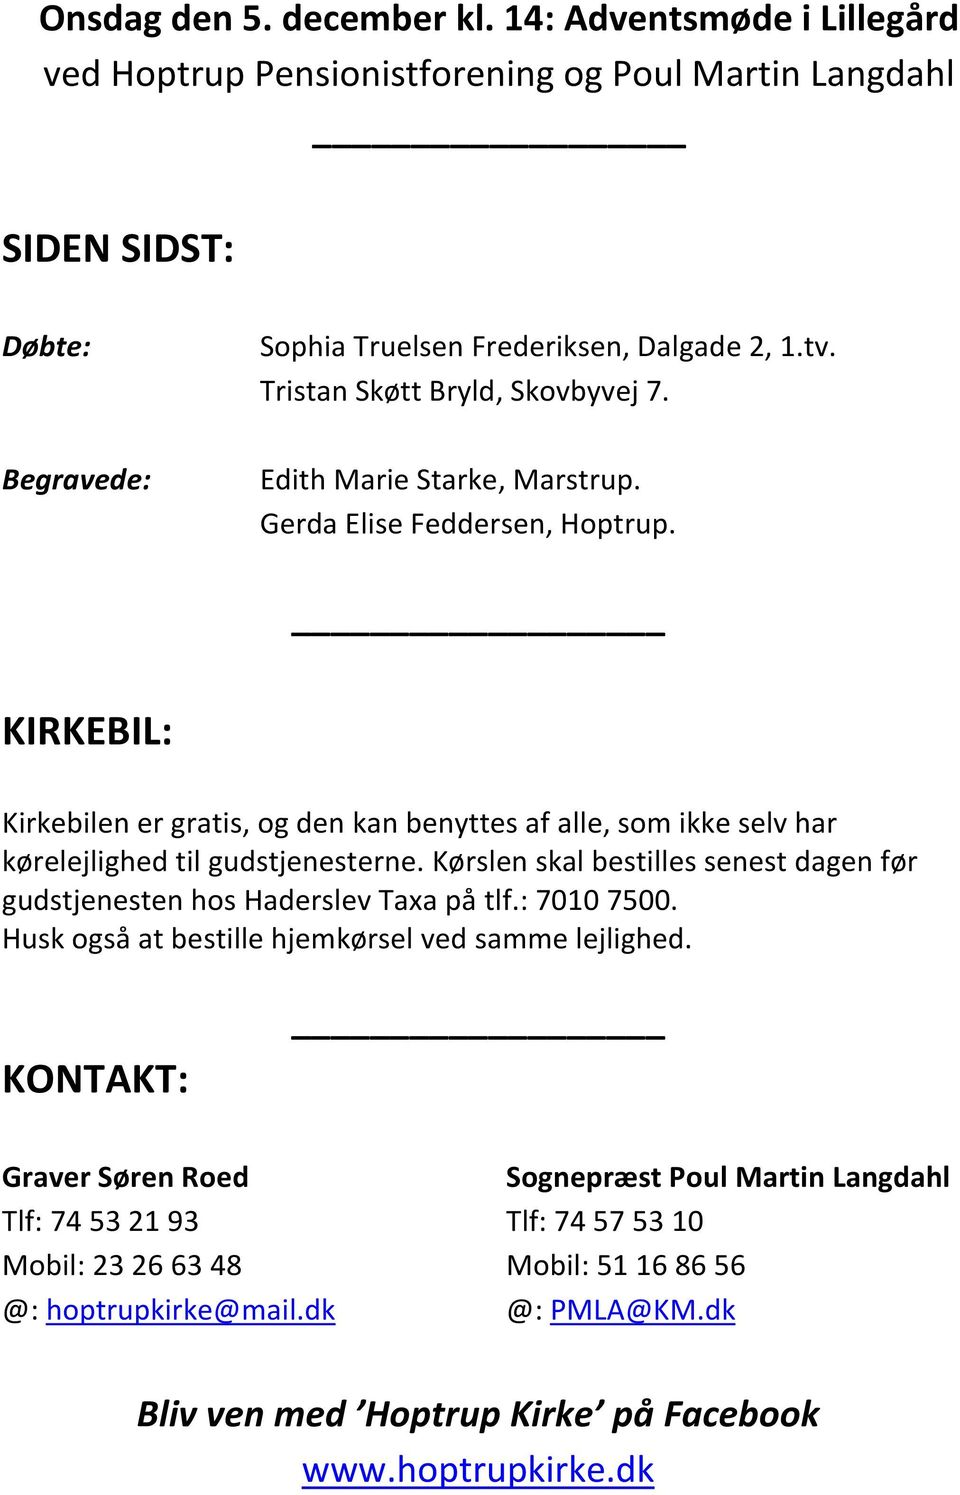 Forbløffe Furnace Strømcelle FÆLLESSKOLEN SAMLES I HOPTRUP - PDF Gratis download